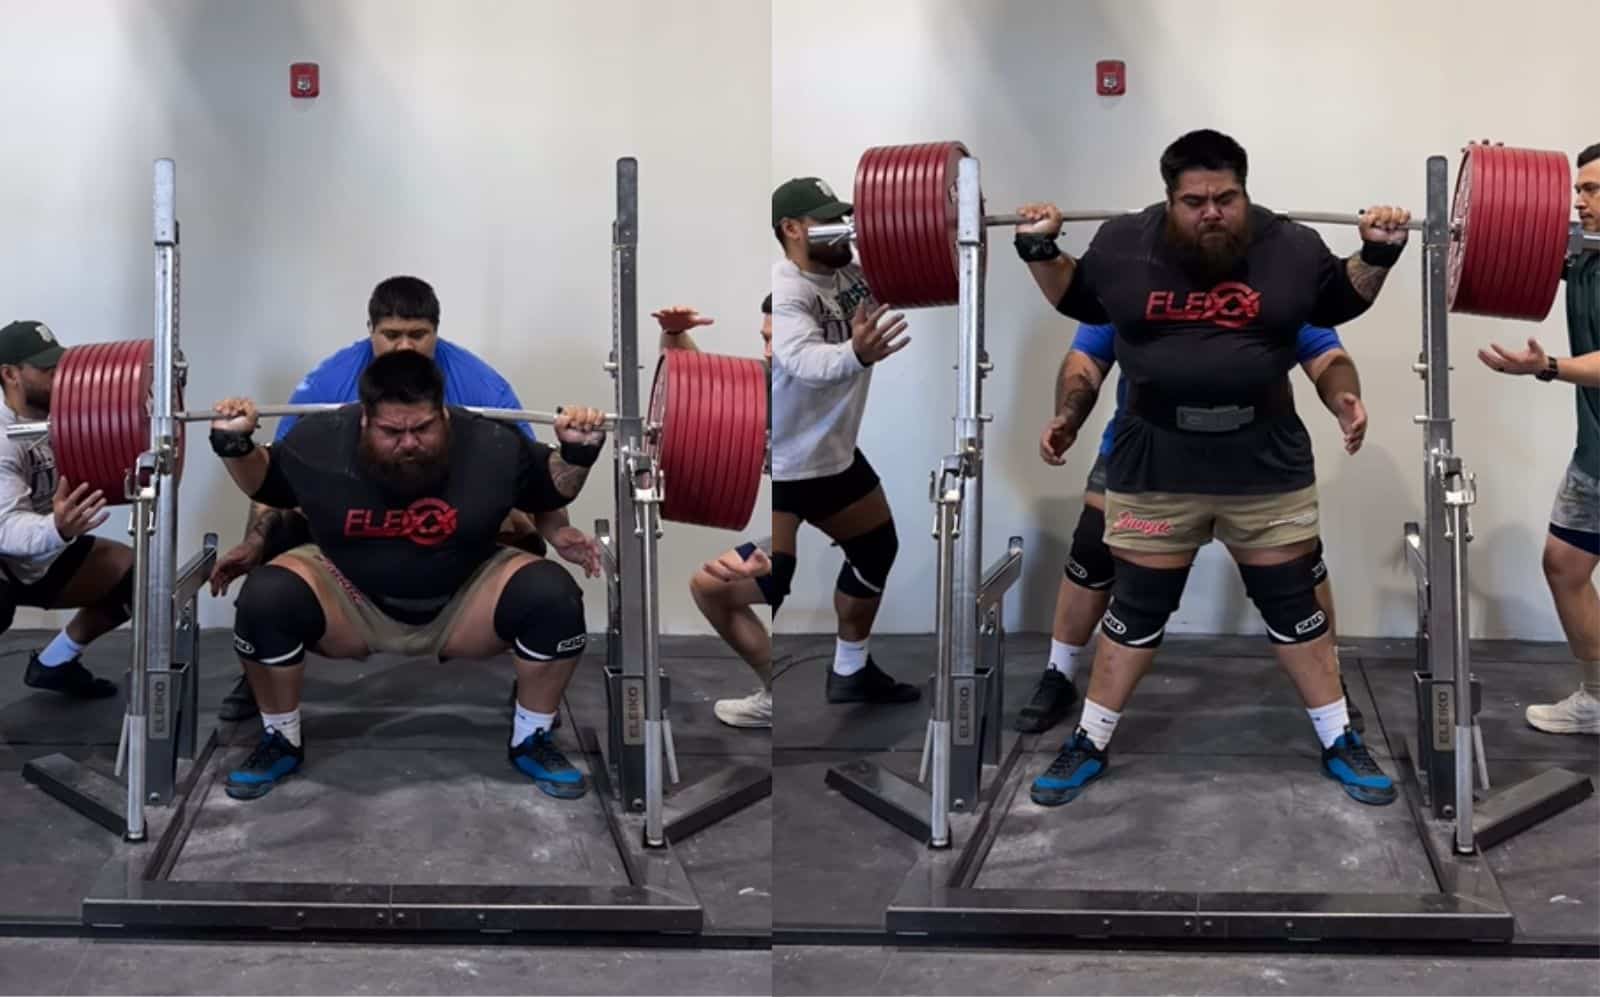 Jesus Olivares marque un PR colossal de 475 kg (1 047,2 lb) en squat brut à l'entraînement – ​​Fitness Volt